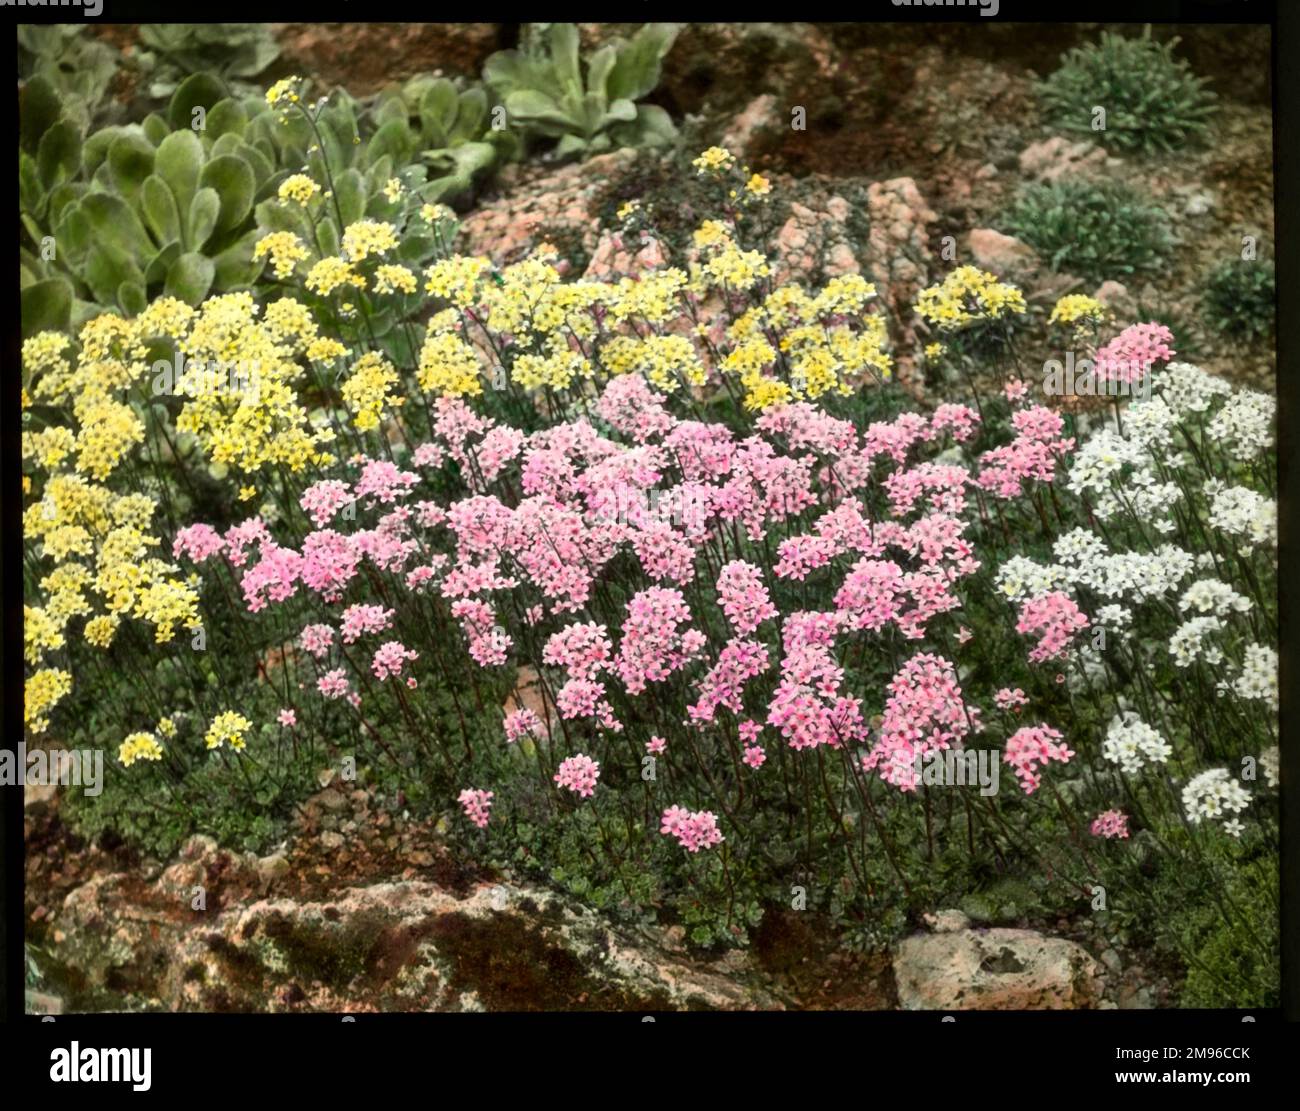 Saxifraga Aizoon (saxifrage Livelong), une plante à fleurs de la famille des Saxifragaceae (communément appelée saxifrages ou briseurs de pierre en raison de leur capacité à se développer dans les fissures entre les roches). Vu ici croissant dans un cadre rocheux aux côtés des variétés de Lutea et de rosea. Banque D'Images